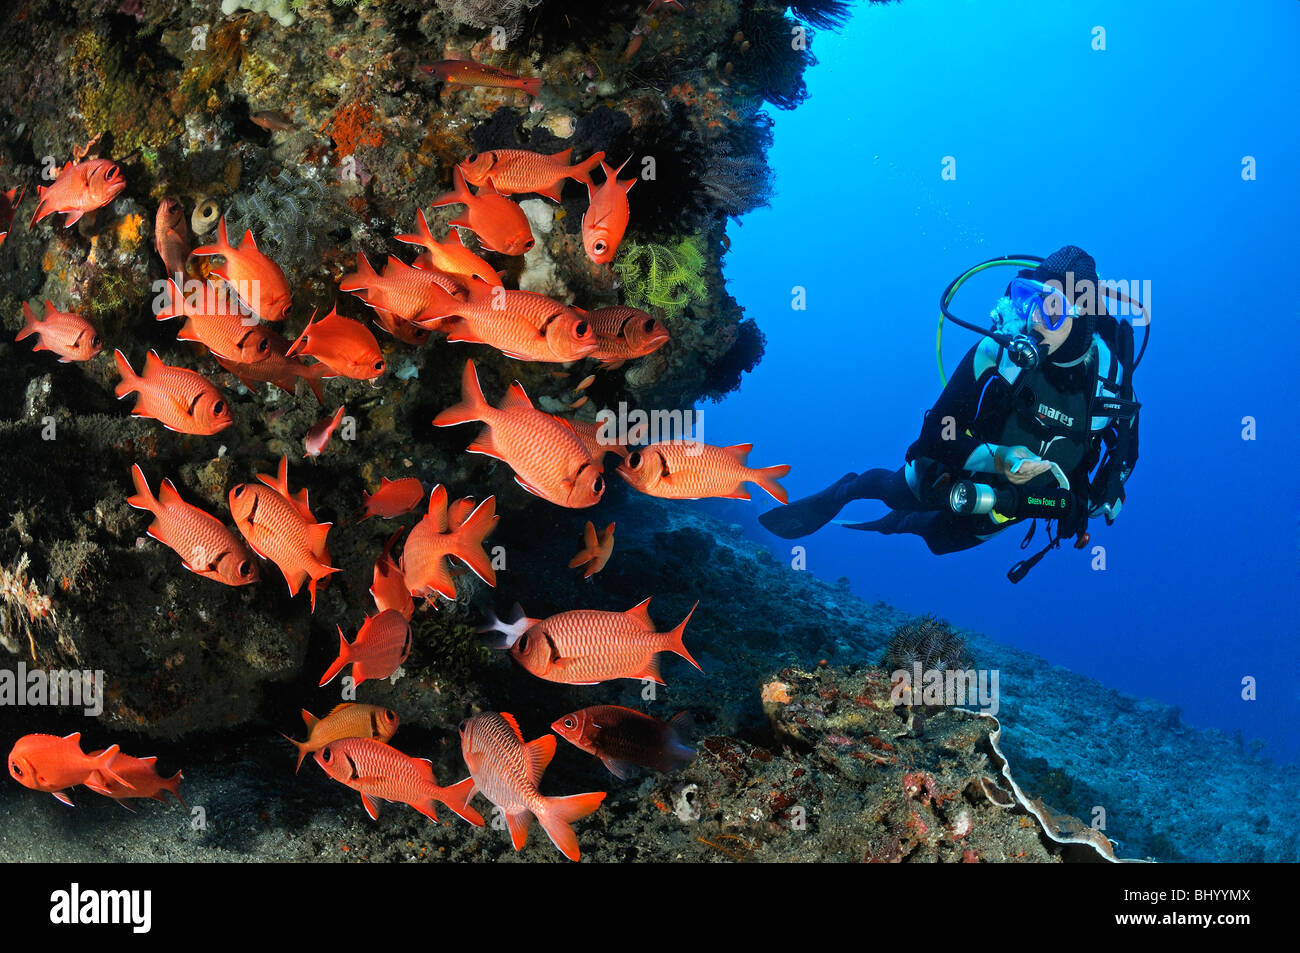 Myripristis murdjan, plongée sous marine avec l'école de poissons soldat, Gili Tepekong, Candidasa, Bali, Indonésie, l'océan Indo-pacifique Banque D'Images